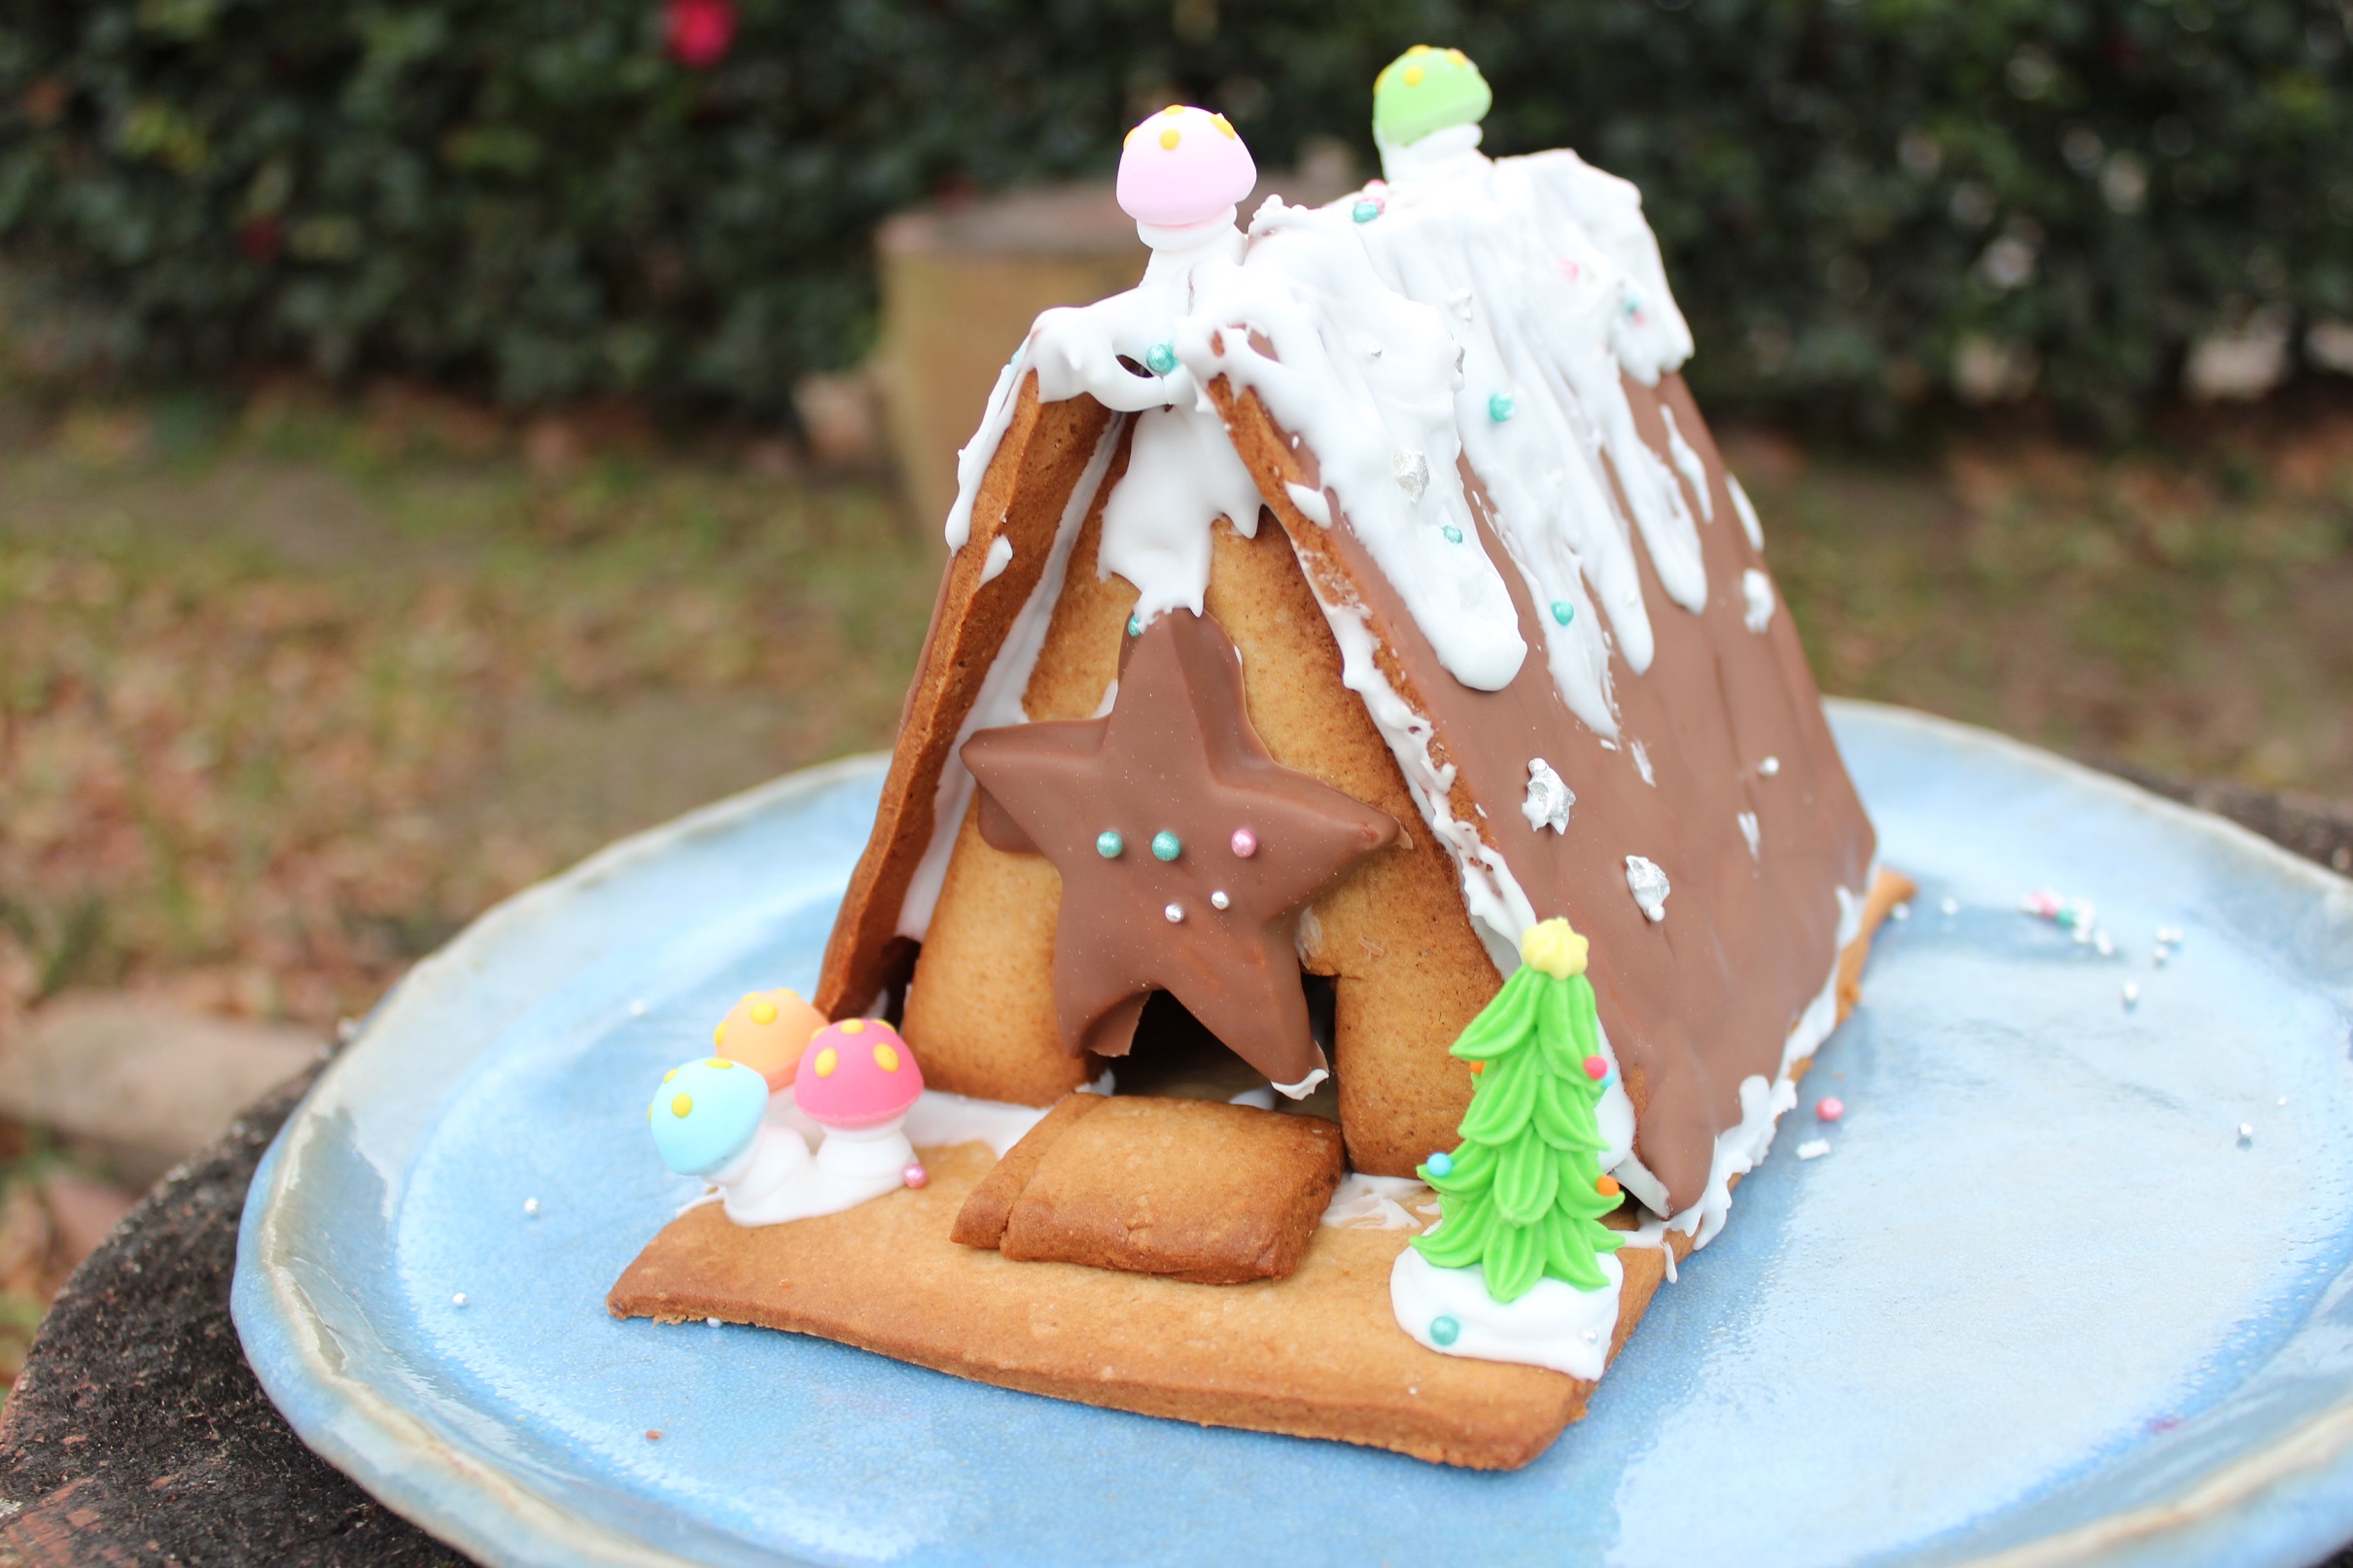 スパイス アロマ香る クリスマスの彩に 夢広がるお菓子の家 ヘクセンハウス の作り方 人生は遊園地